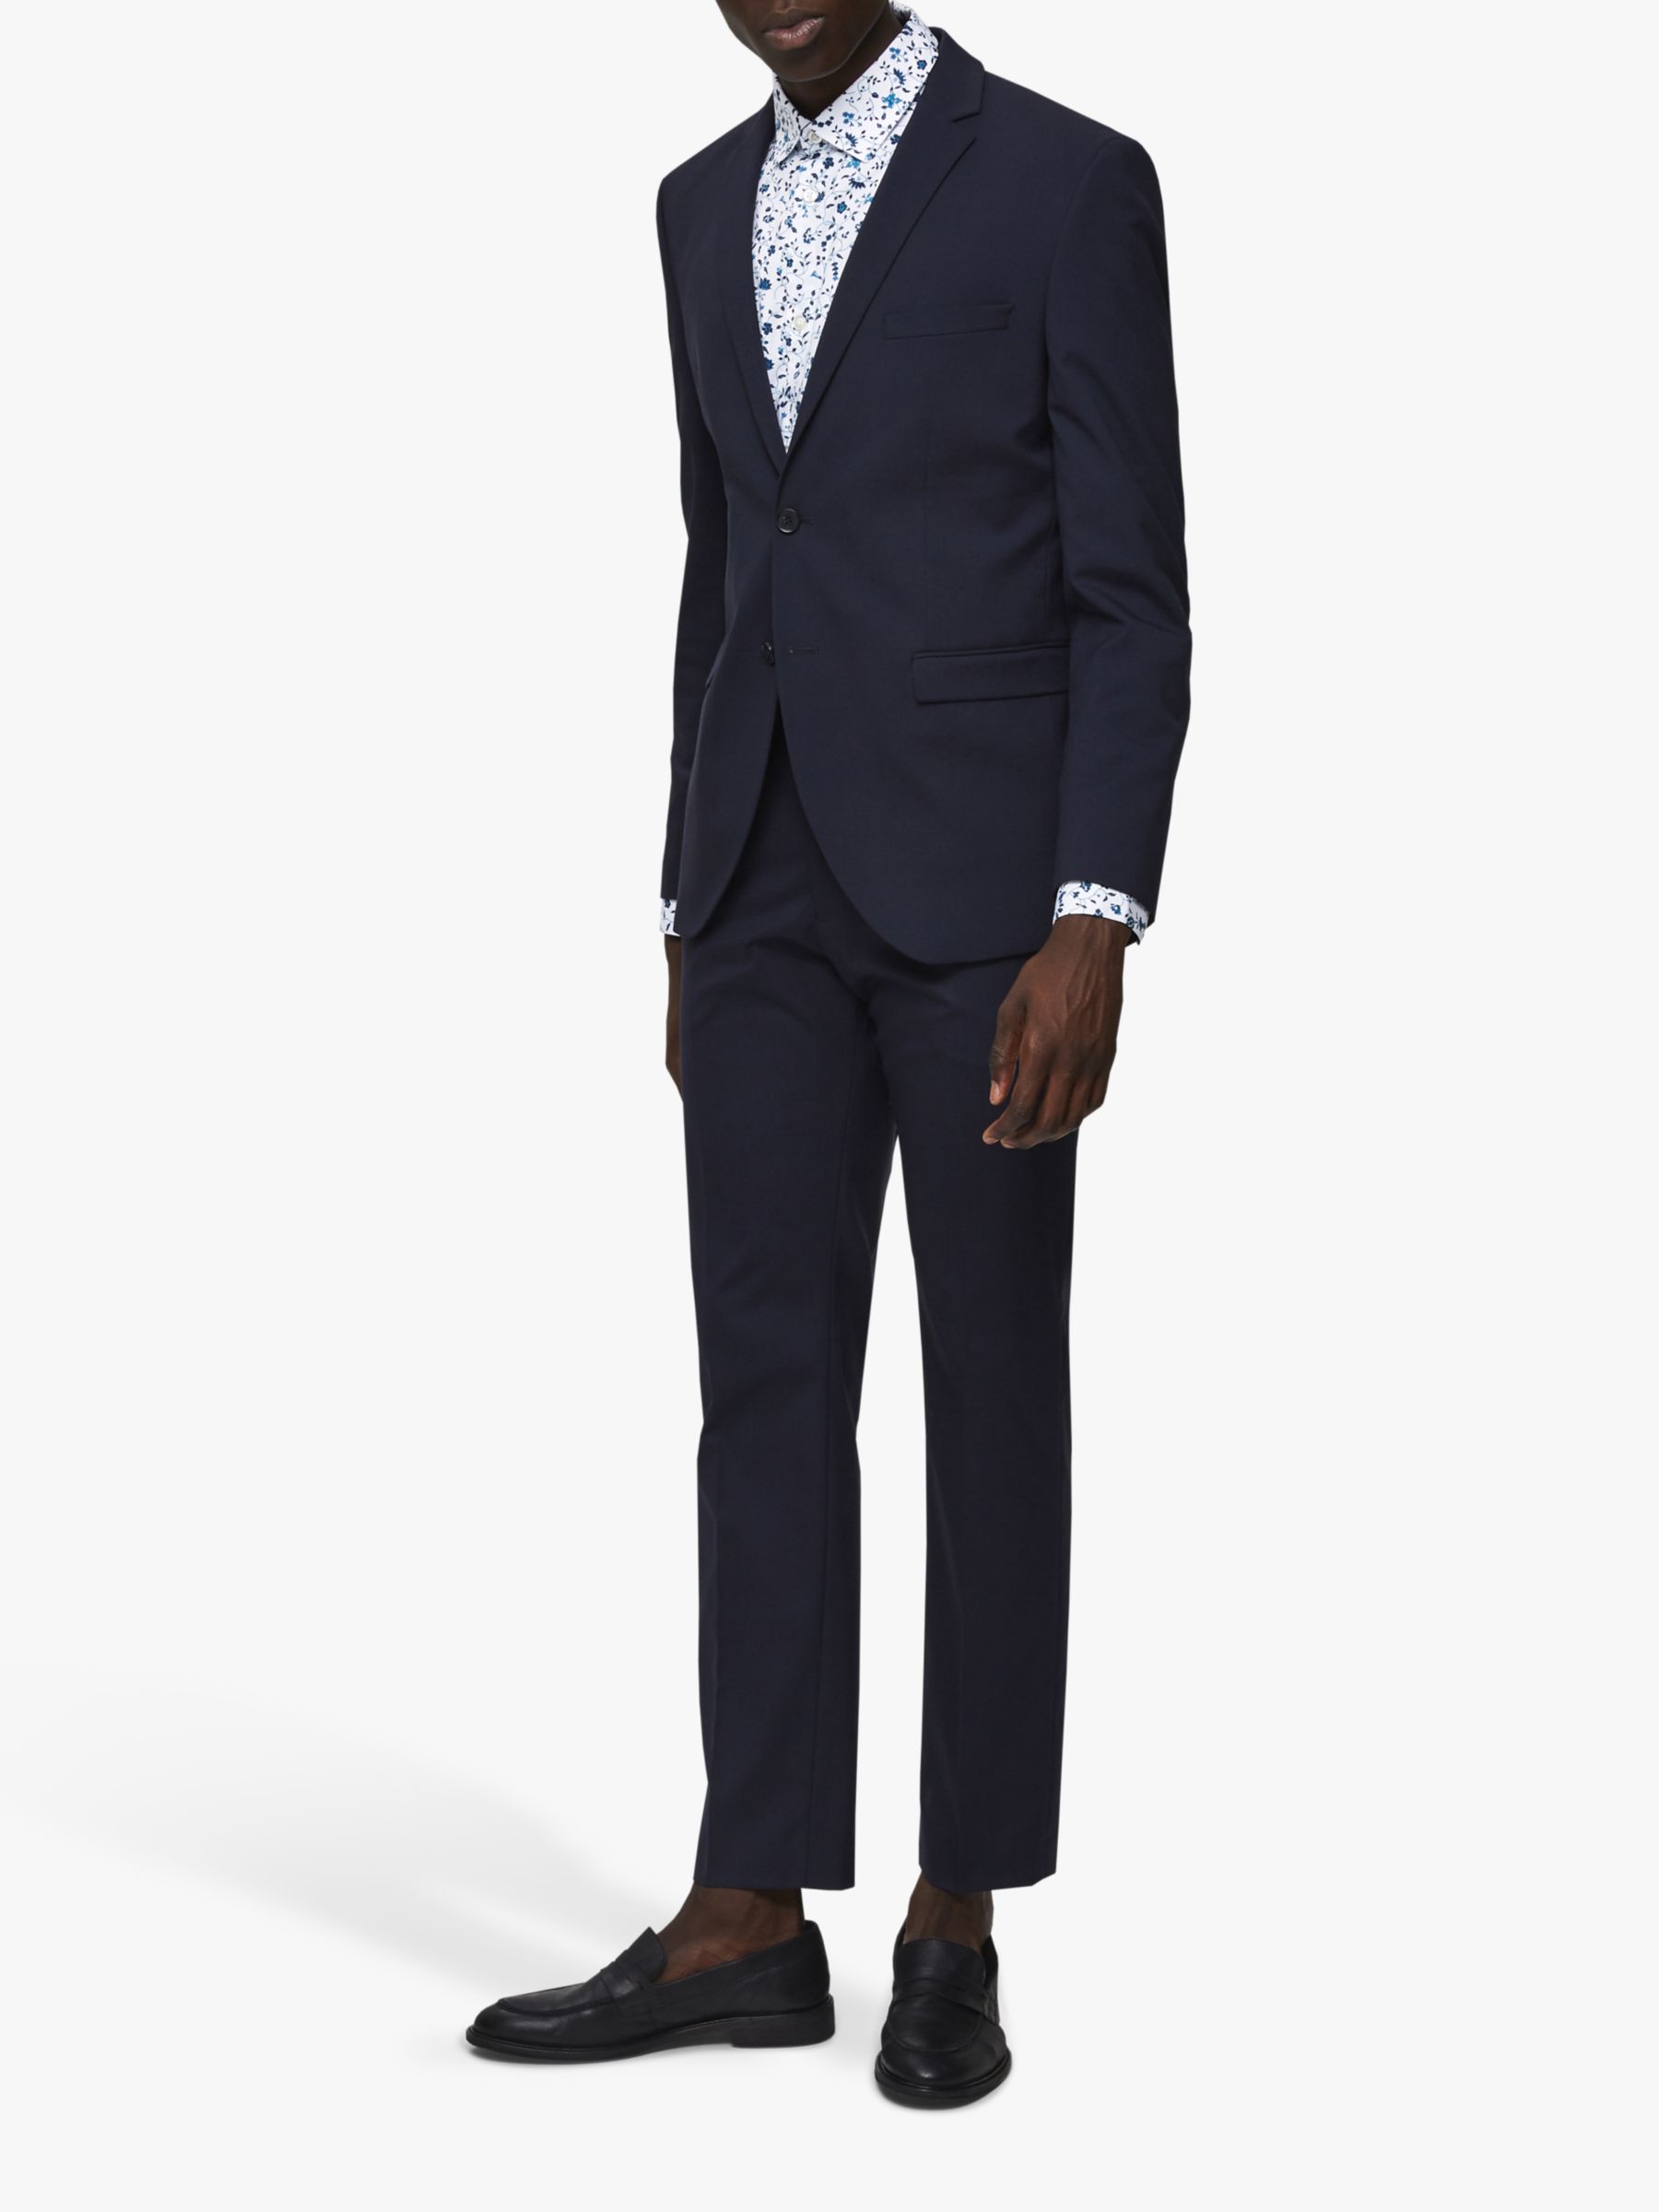 slump ingeniørarbejde Et bestemt SELECTED HOMME Slim Fit Suit Jacket, Navy at John Lewis & Partners